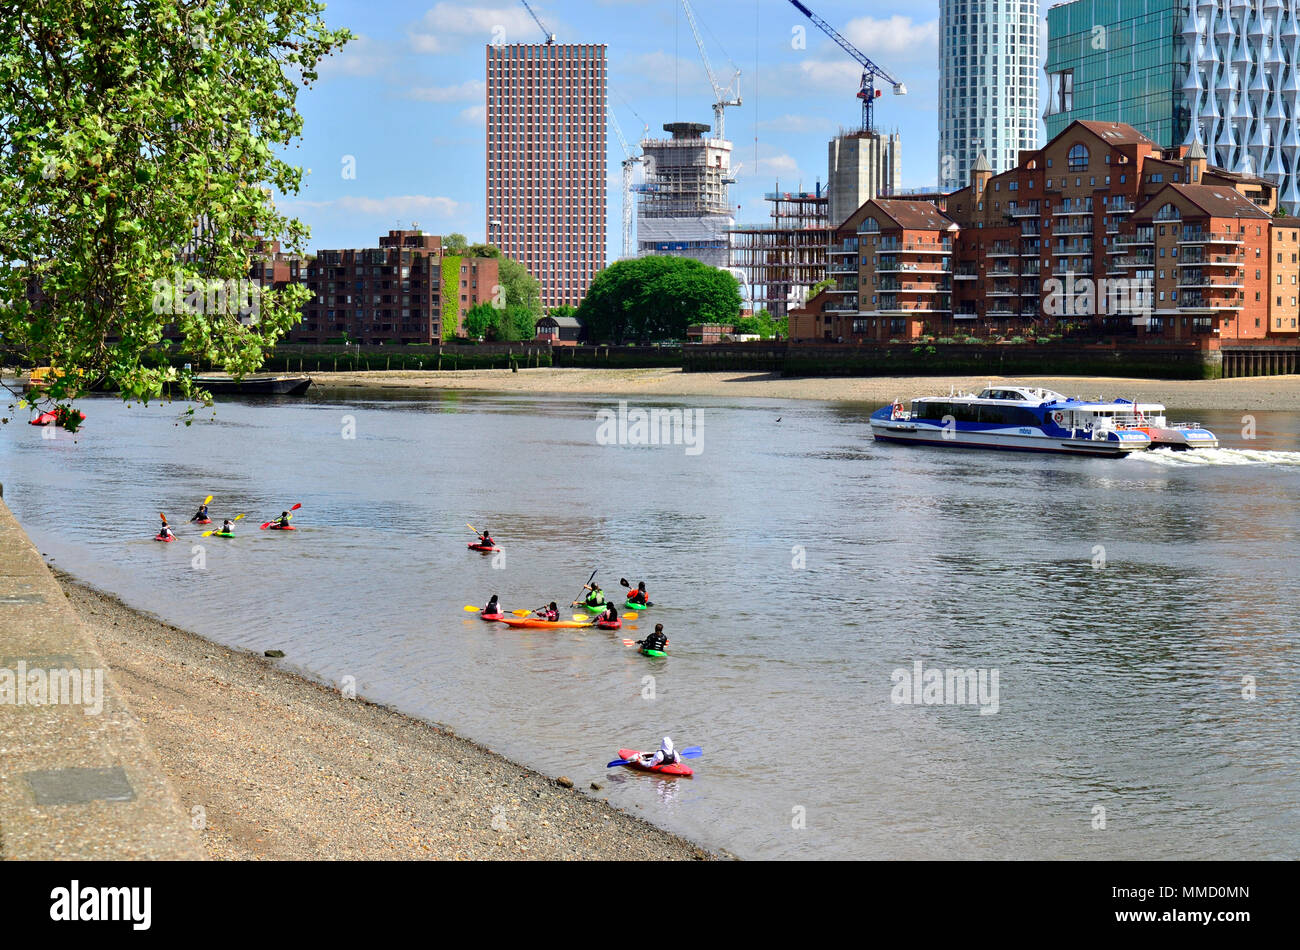 London,England, UK. Children canoeing on the river Thames, opposite Battersea Power Station Stock Photo